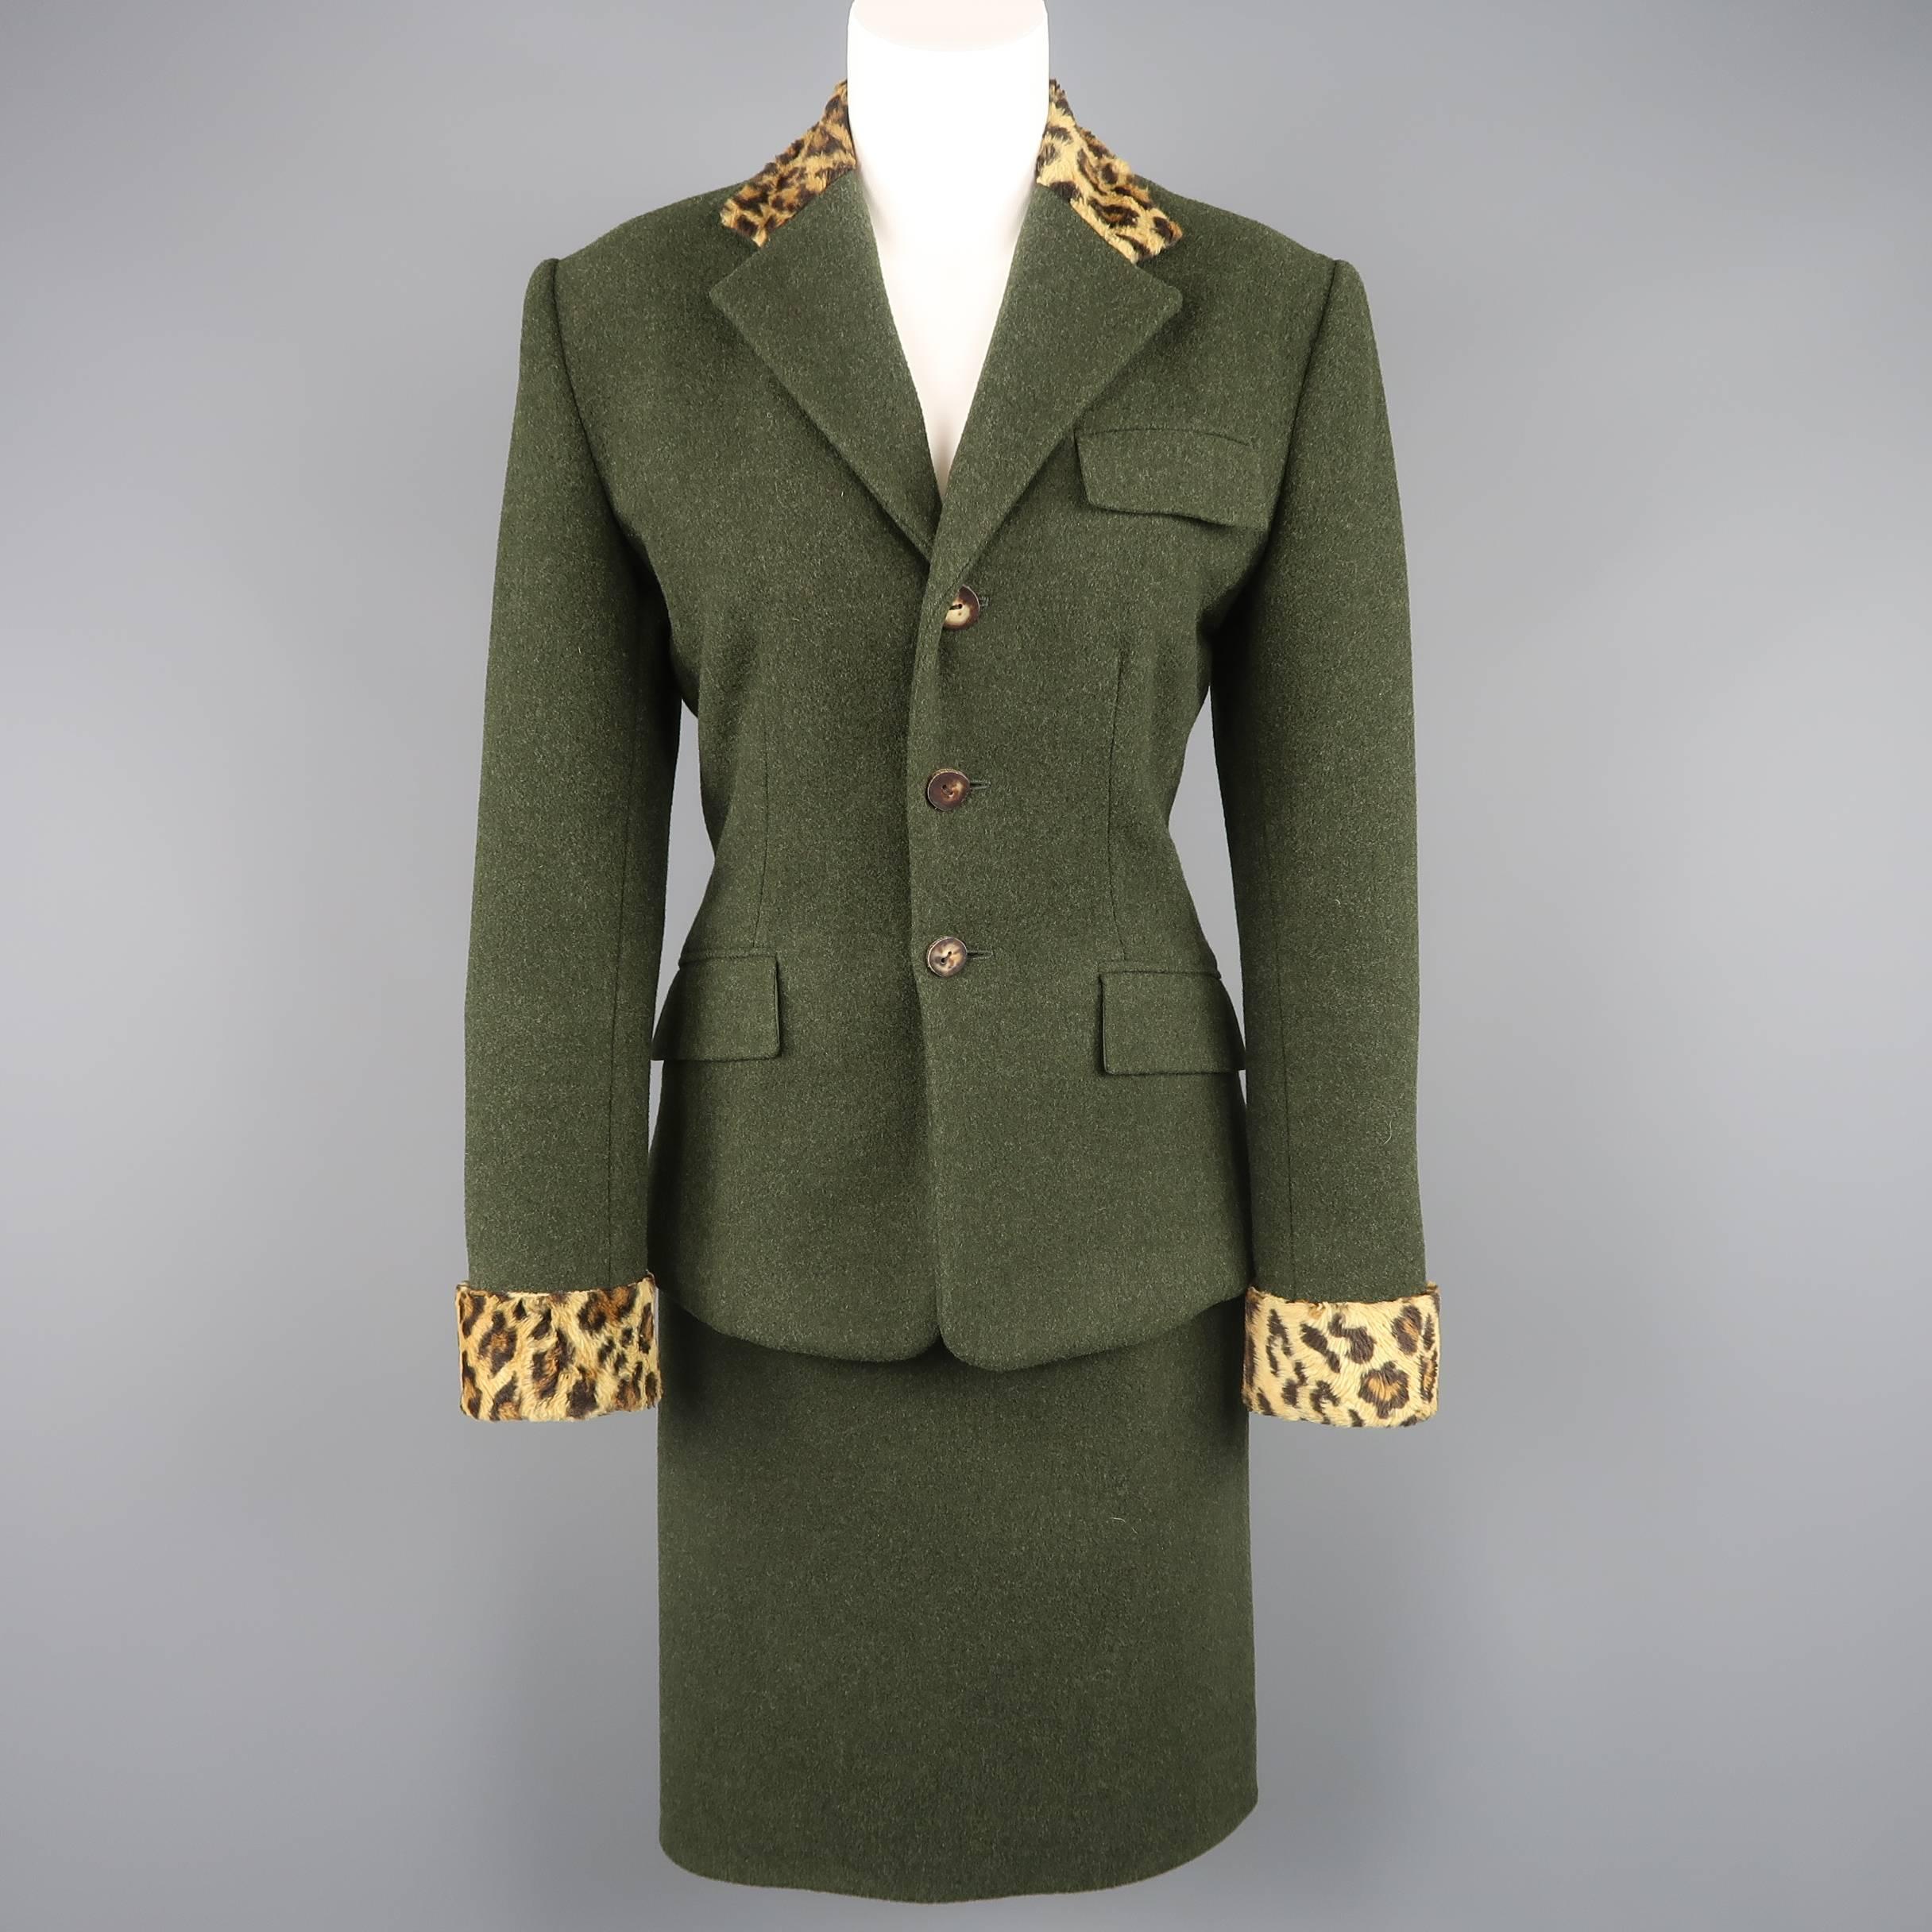 RALPH LAUREN Size 4 Green Wool / Cashmere Leopard Collar Jacket 4